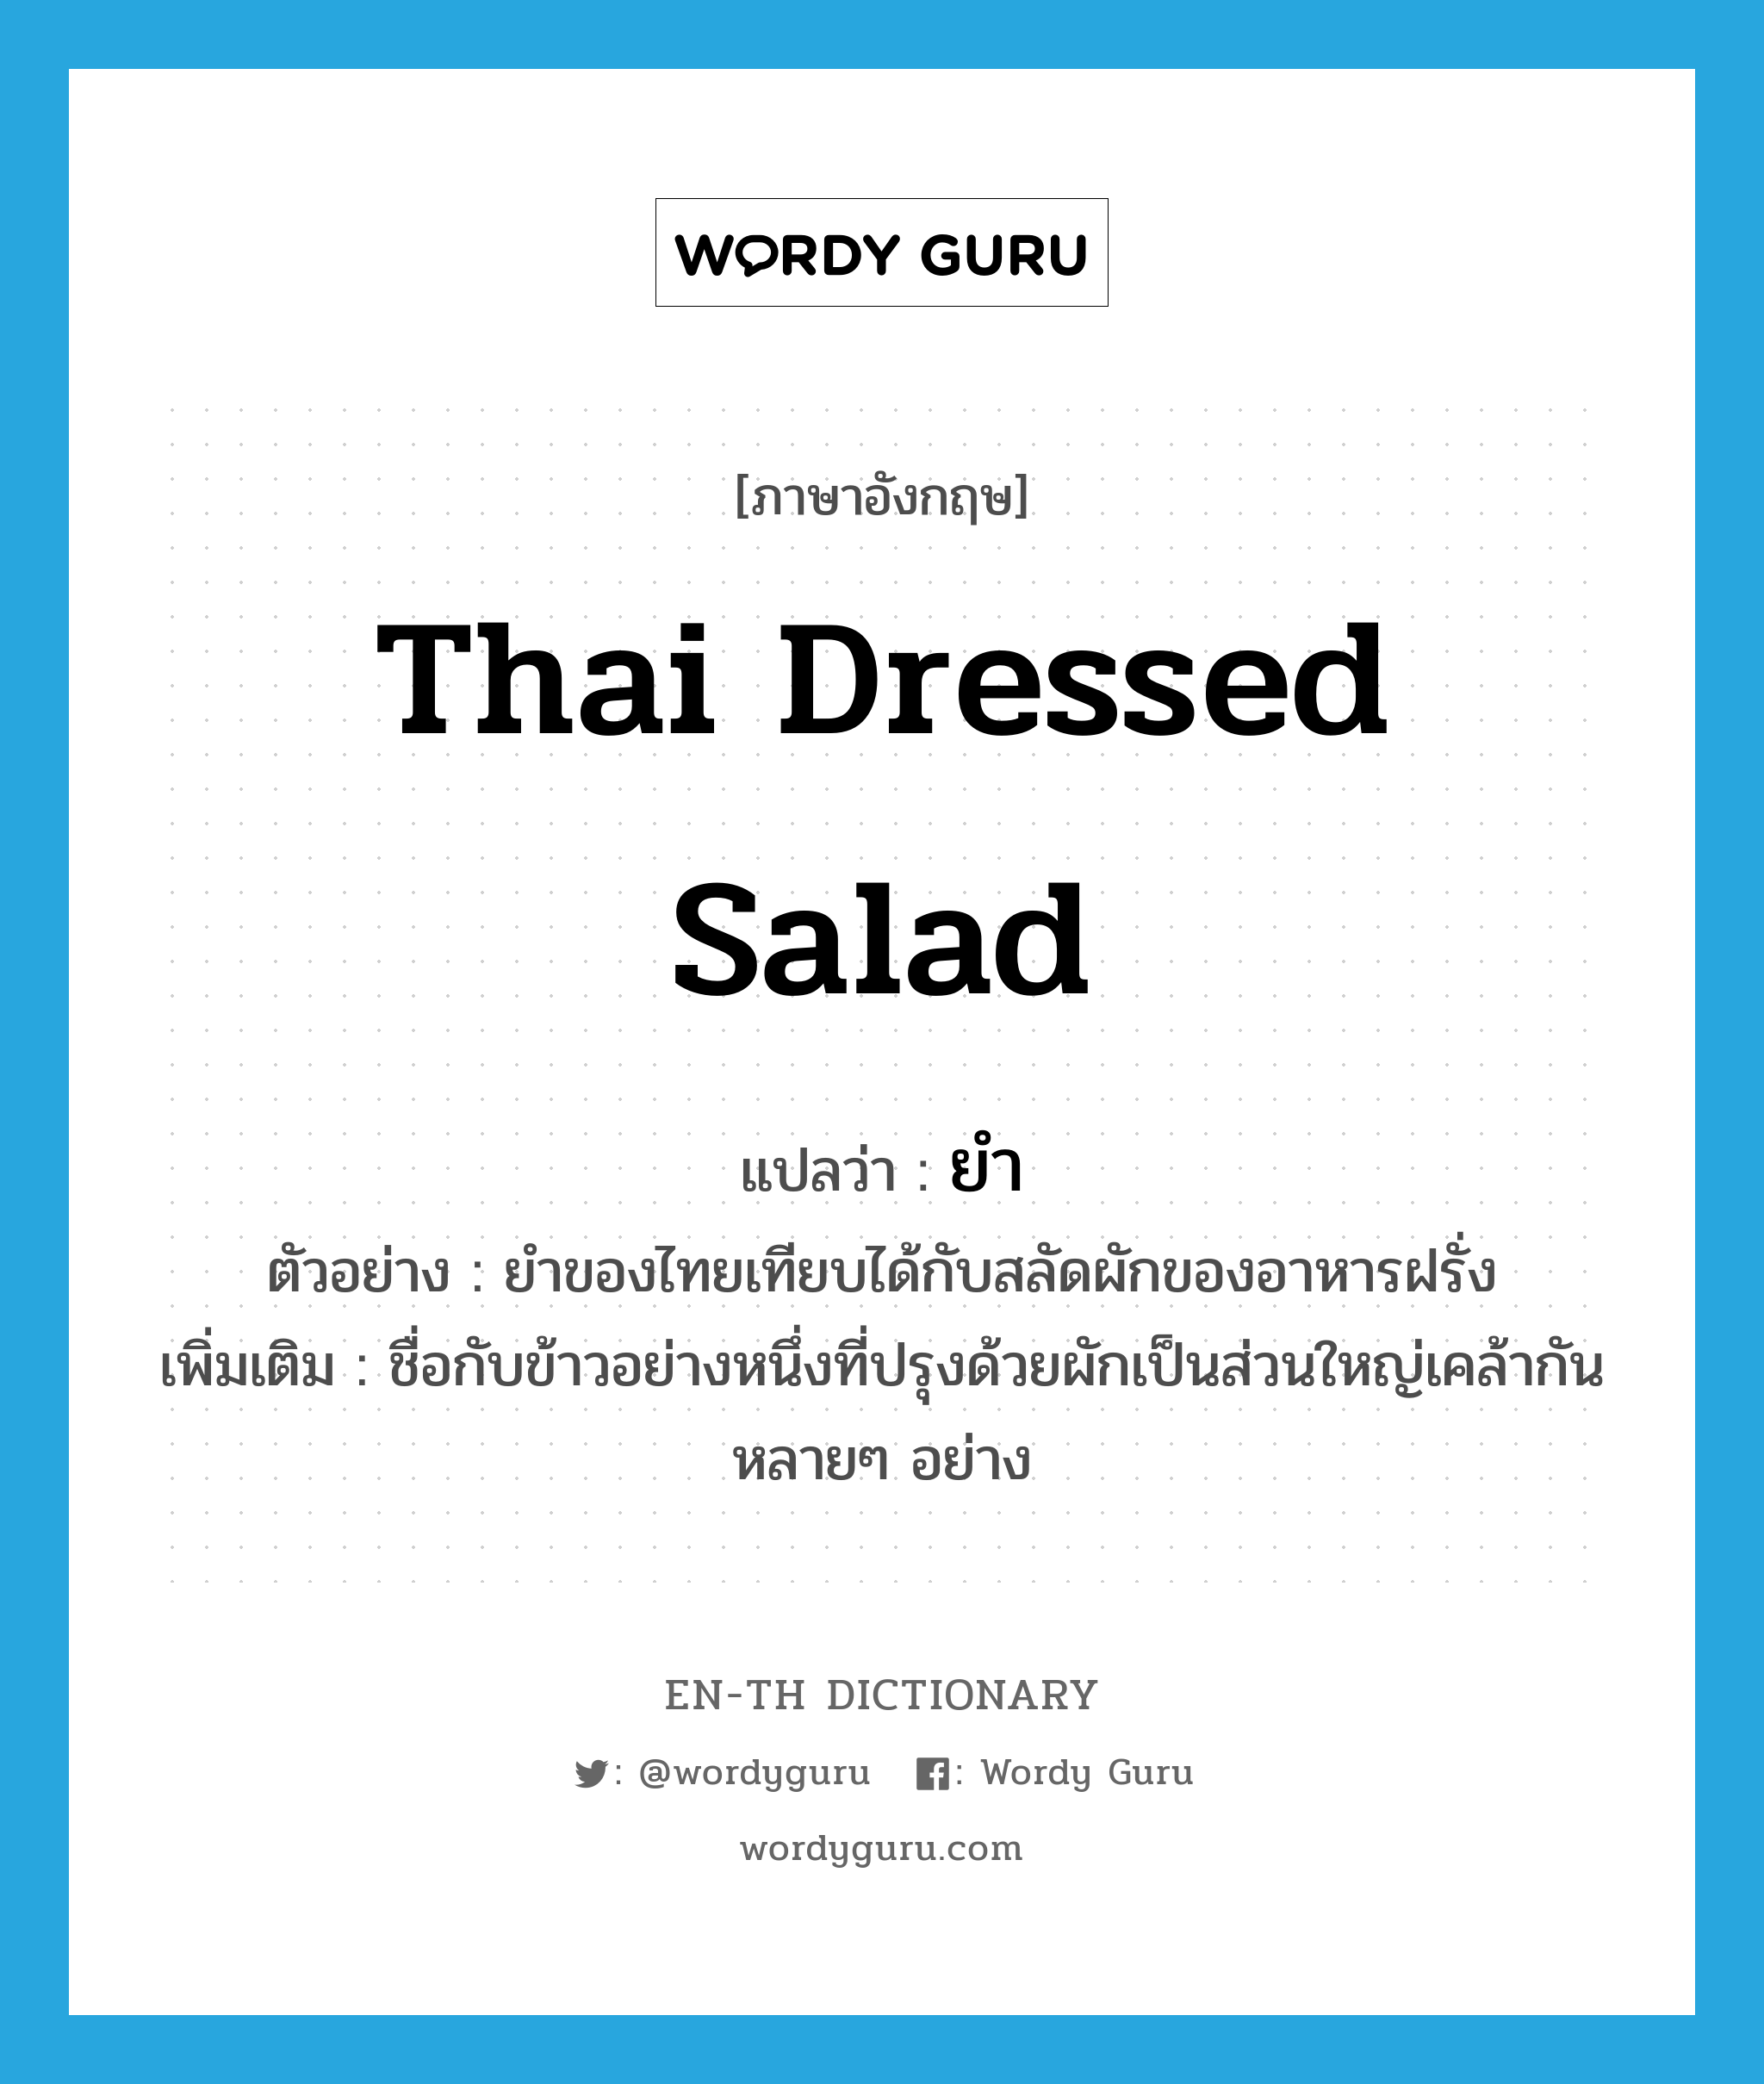 ยำ ภาษาอังกฤษ?, คำศัพท์ภาษาอังกฤษ ยำ แปลว่า Thai dressed salad ประเภท N ตัวอย่าง ยำของไทยเทียบได้กับสลัดผักของอาหารฝรั่ง เพิ่มเติม ชื่อกับข้าวอย่างหนึ่งที่ปรุงด้วยผักเป็นส่วนใหญ่เคล้ากันหลายๆ อย่าง หมวด N